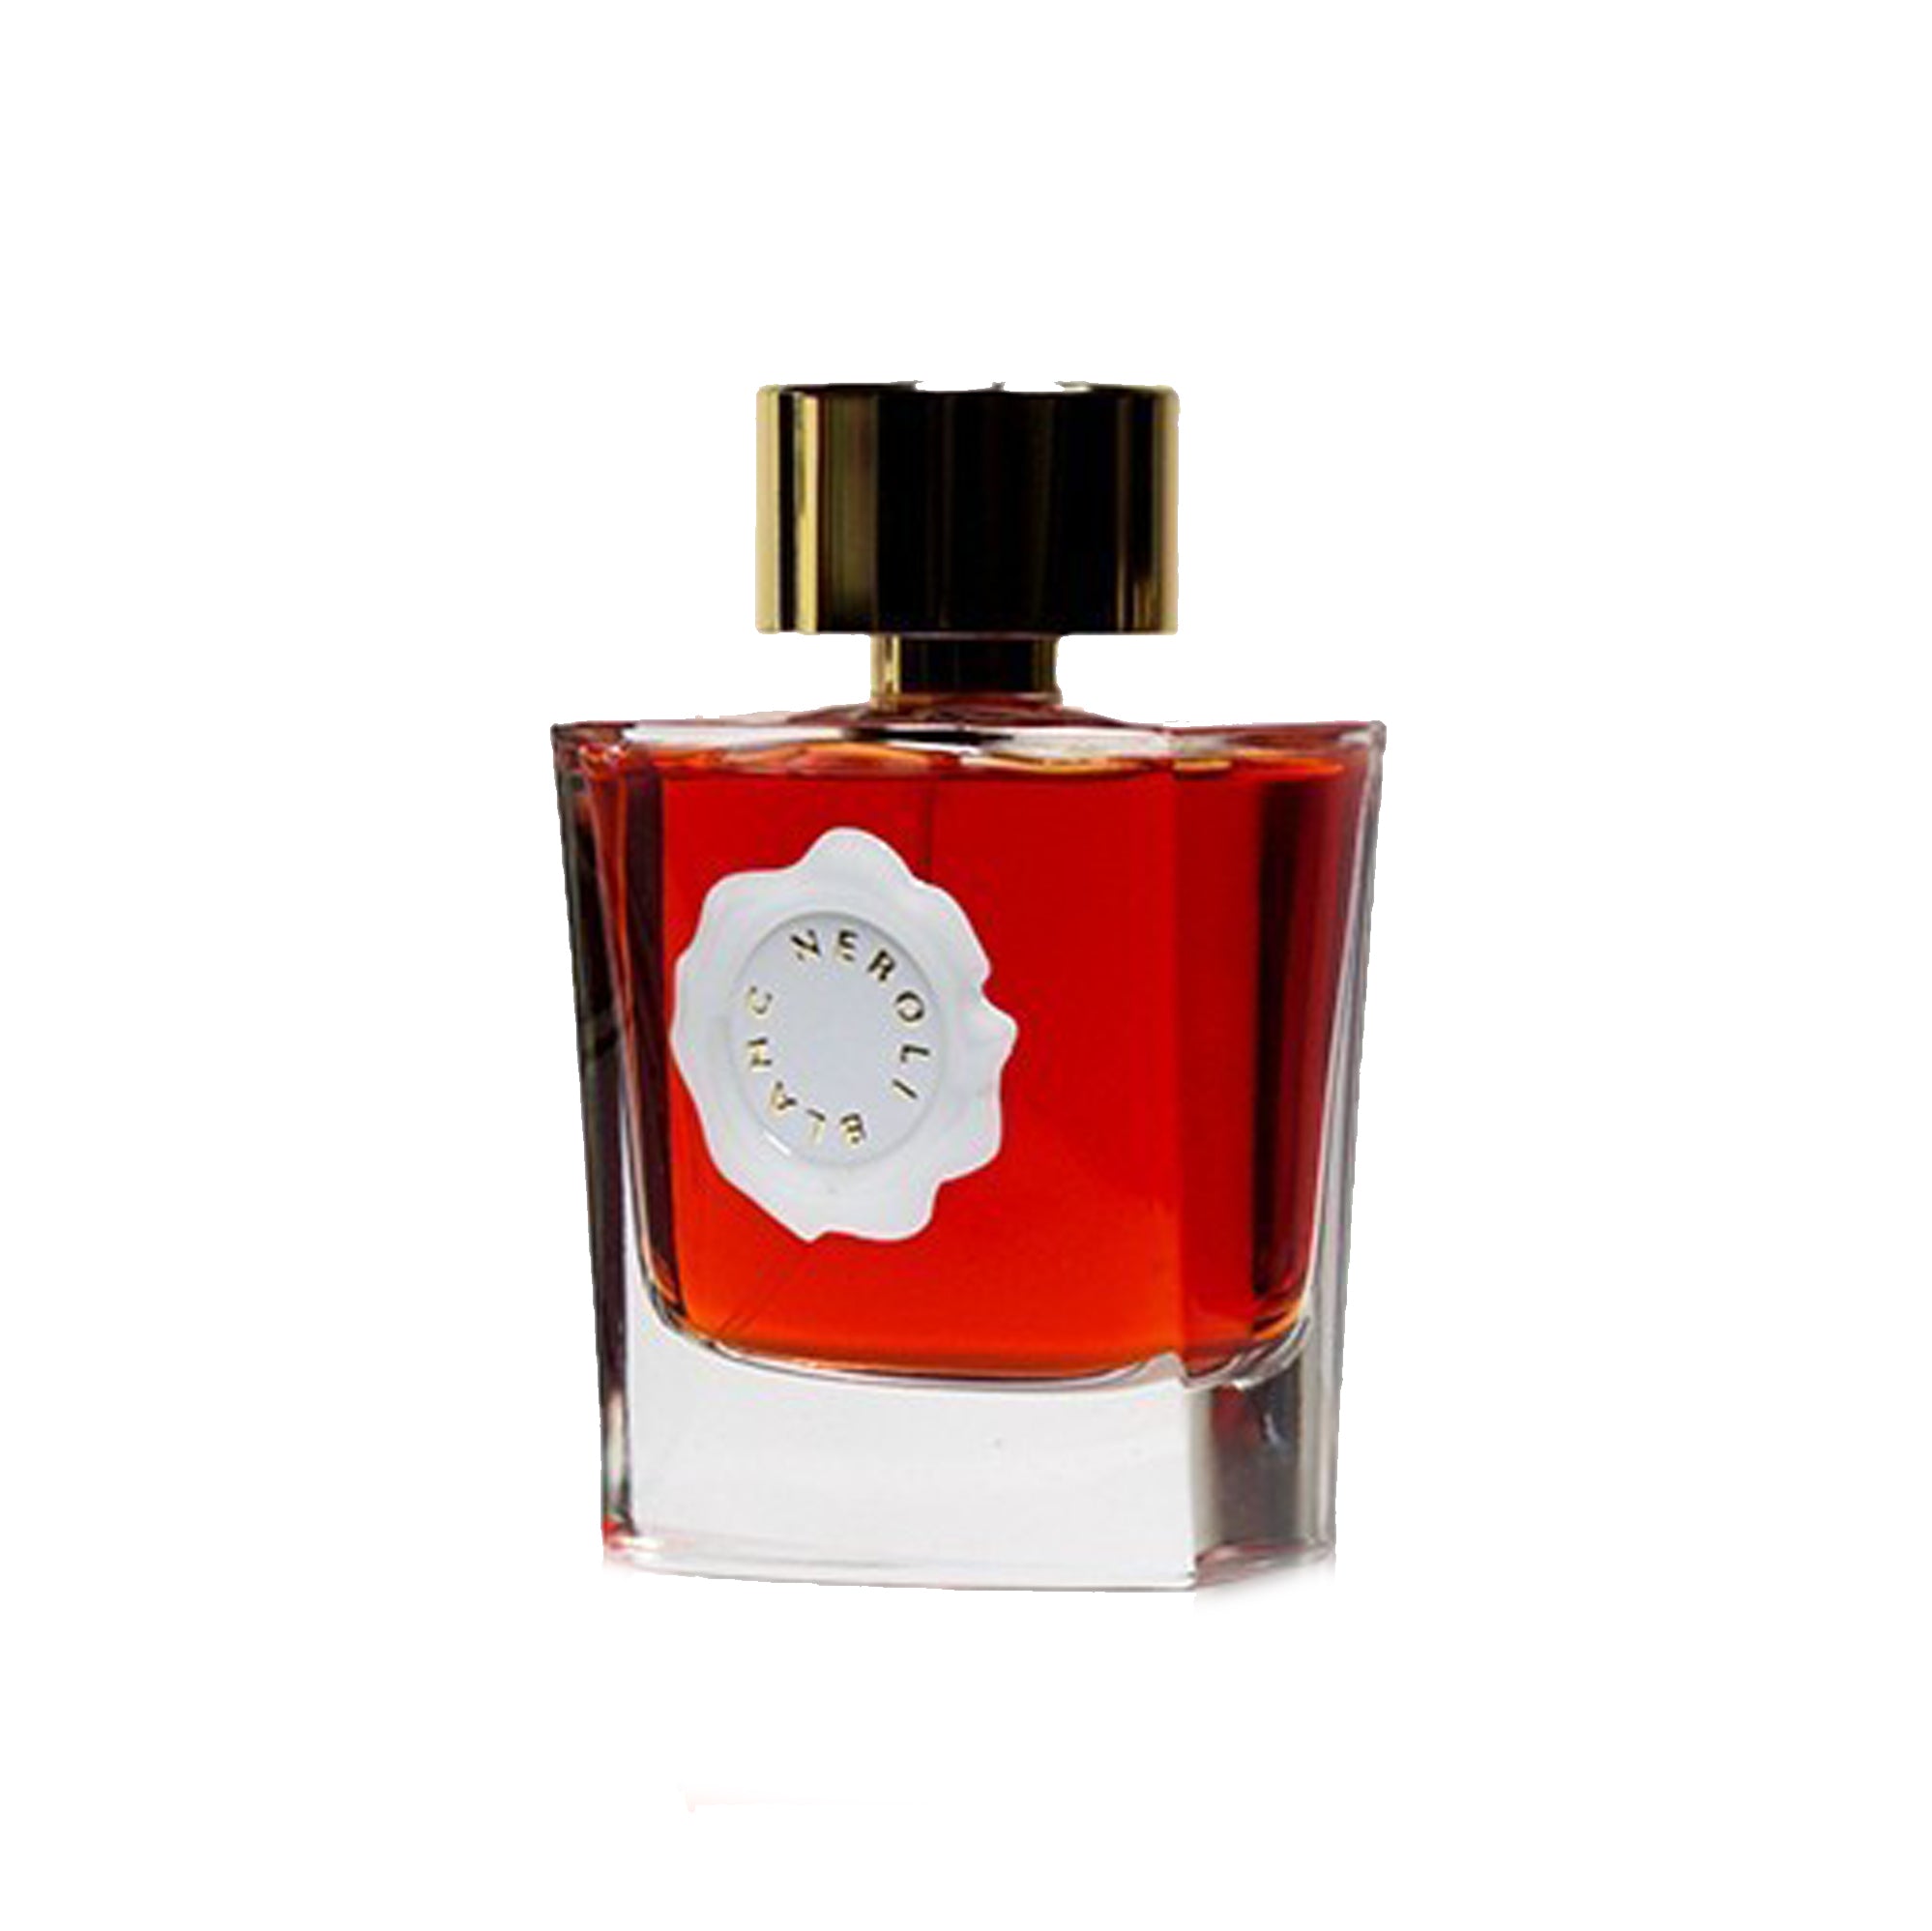 Neroli Blanc Eau de Parfum 50ml Bottle by Au Pays de la Fleur D'Oranger